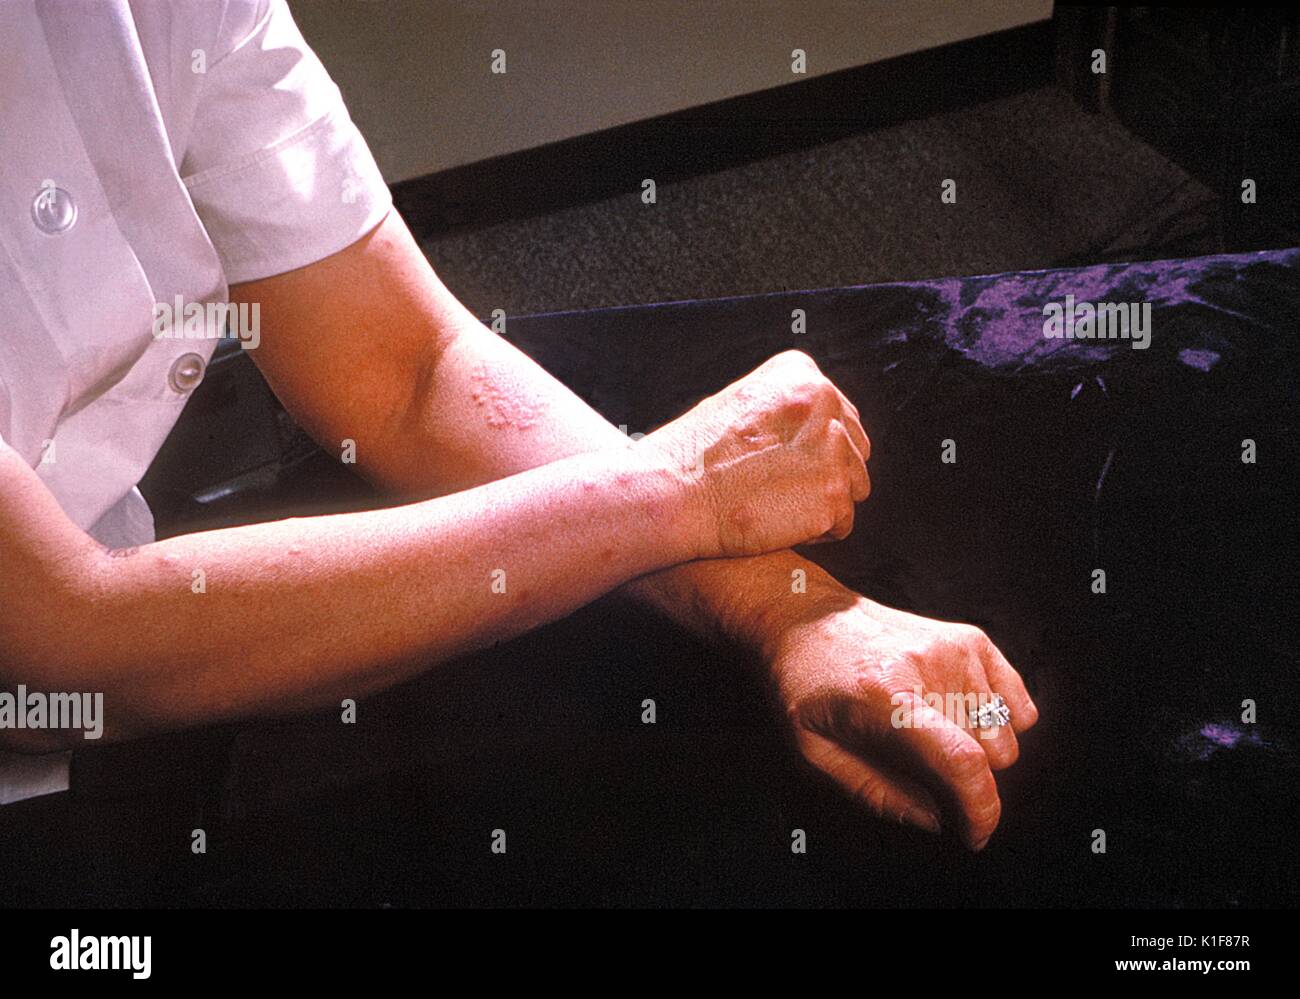 Un paziente di braccia e mani mostra la presenza di eritema nodoso. Di solito, eritema nodoso è una sequela secondaria di un altro processo di malattia o a causa di un farmaco reazione di ipersensibilità che si manifesta come gara red protuberanze sulla pelle. Immagine cortesia CDC/Margaret Renz, 1964. Foto Stock